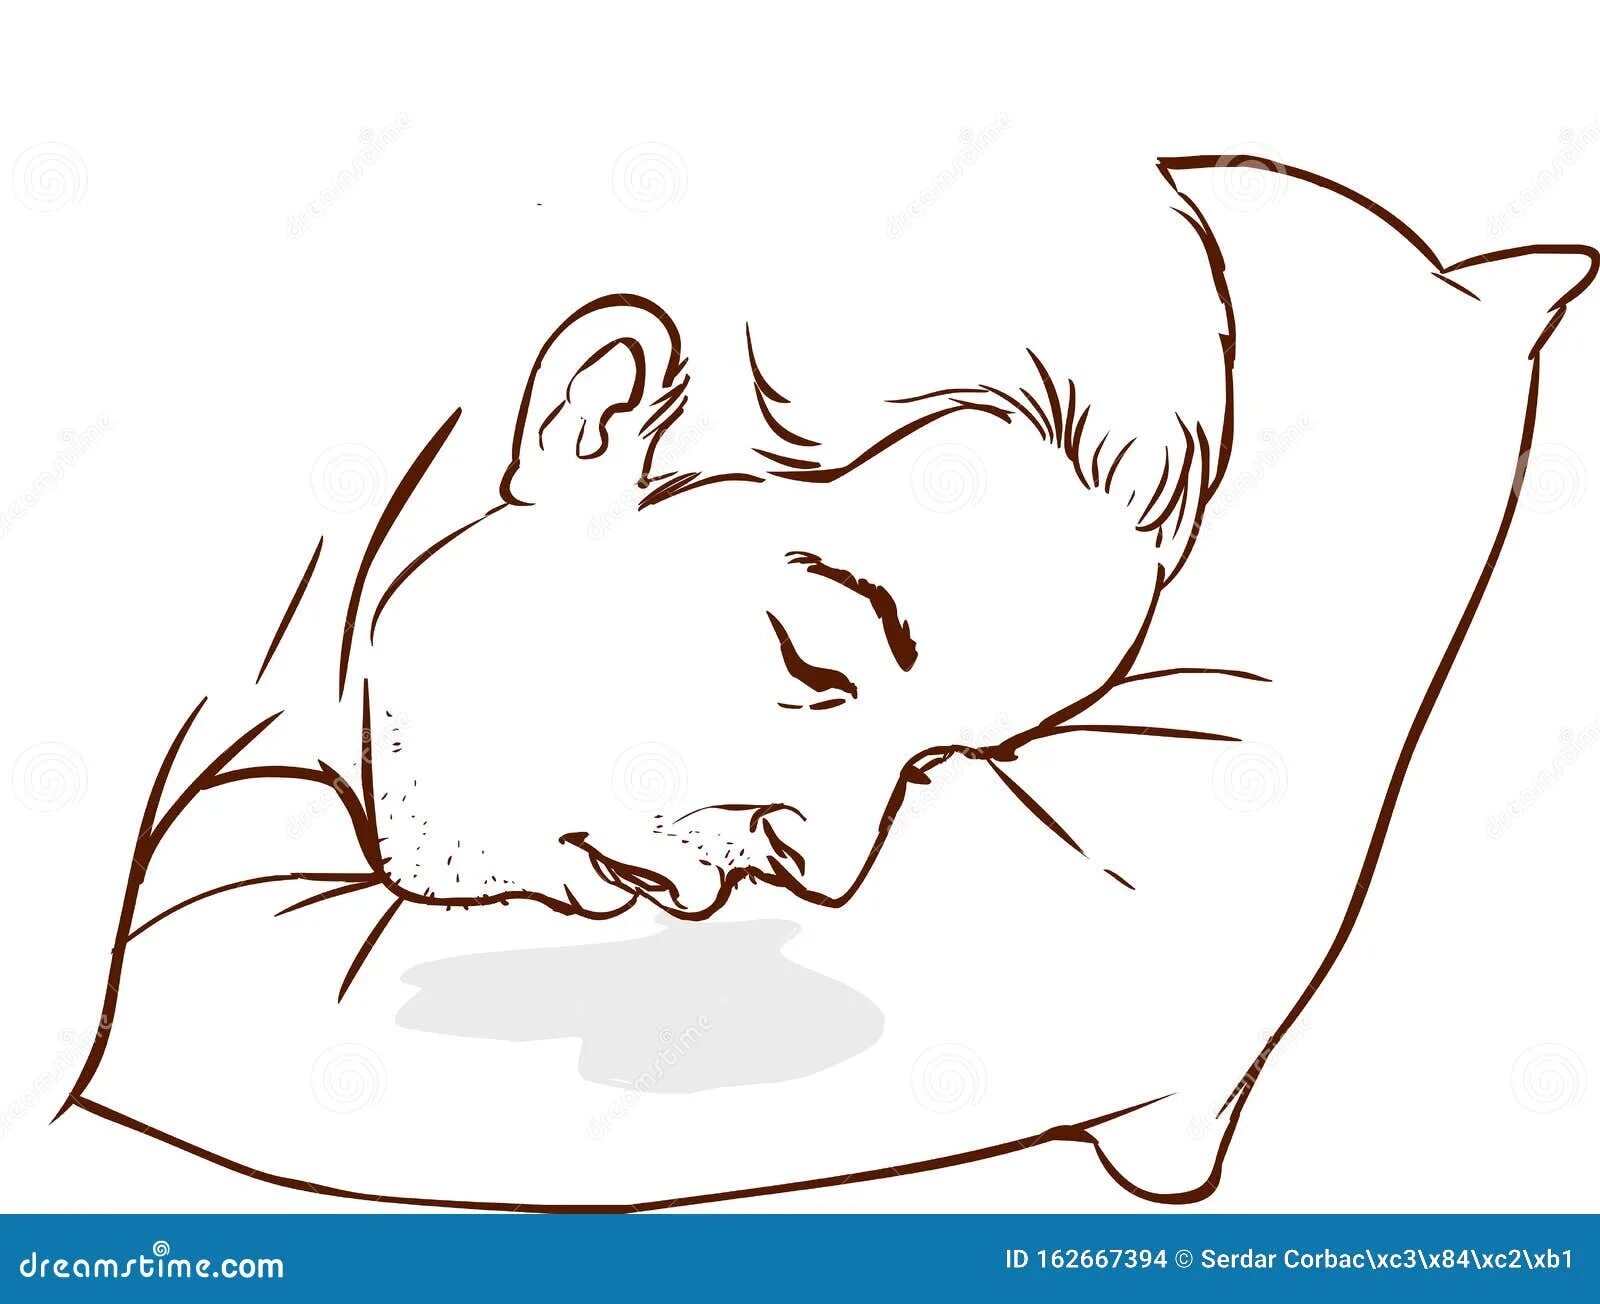 Слюна на подушке. Рисунок спящий человек со слюной. Голова лежит на подушке рисунок.